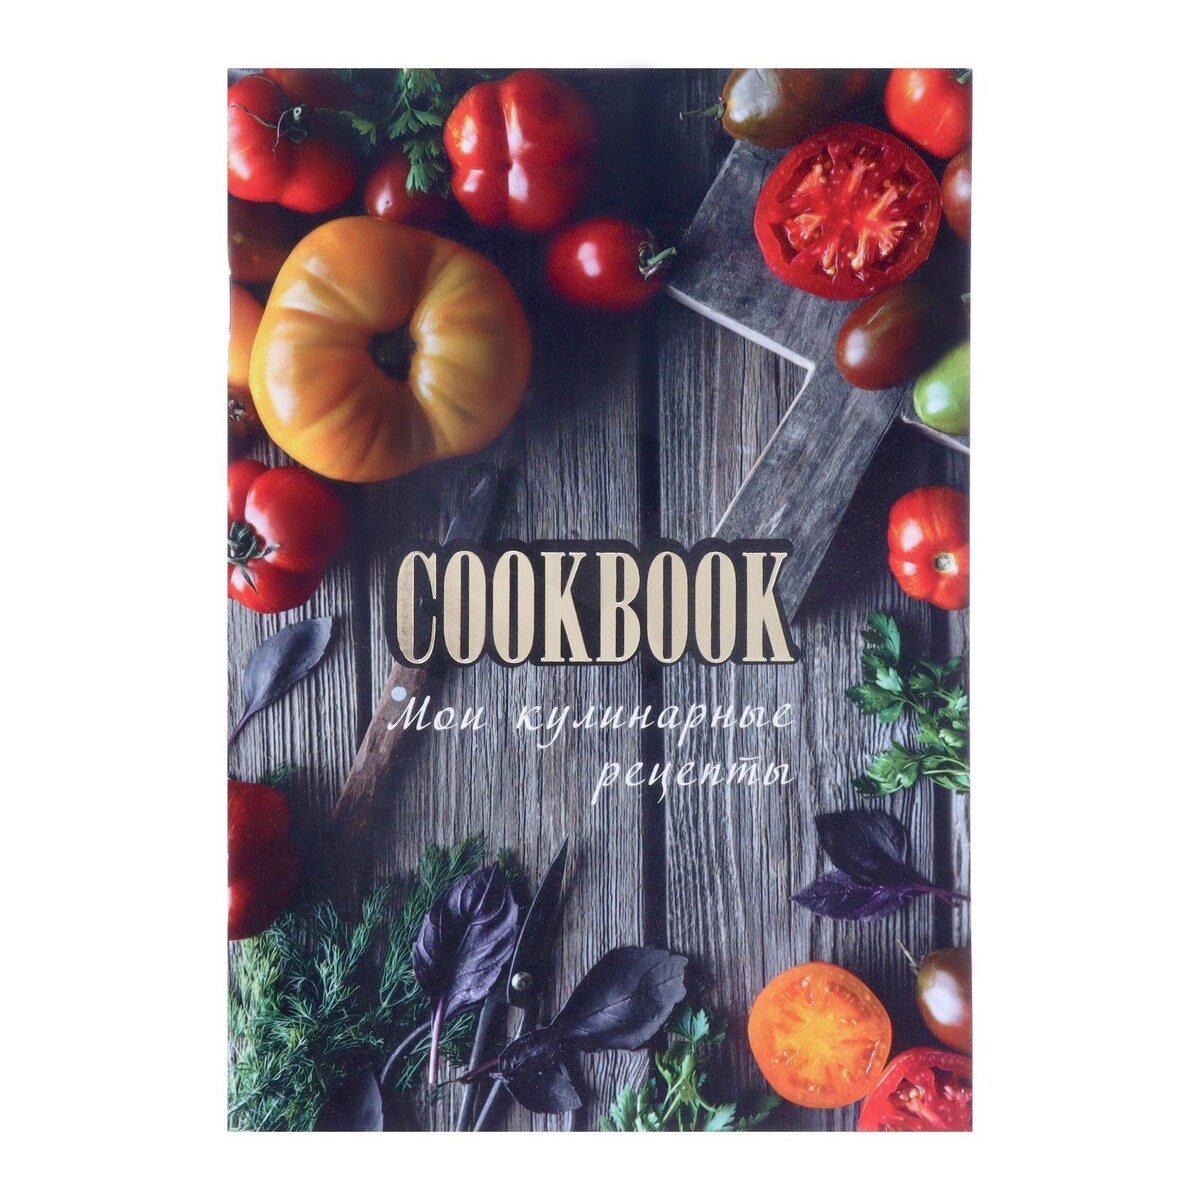 Книга для записи кулинарных рецептов а5, 48 листов искусство на десерт книга рецептов от уникального кондитера современности